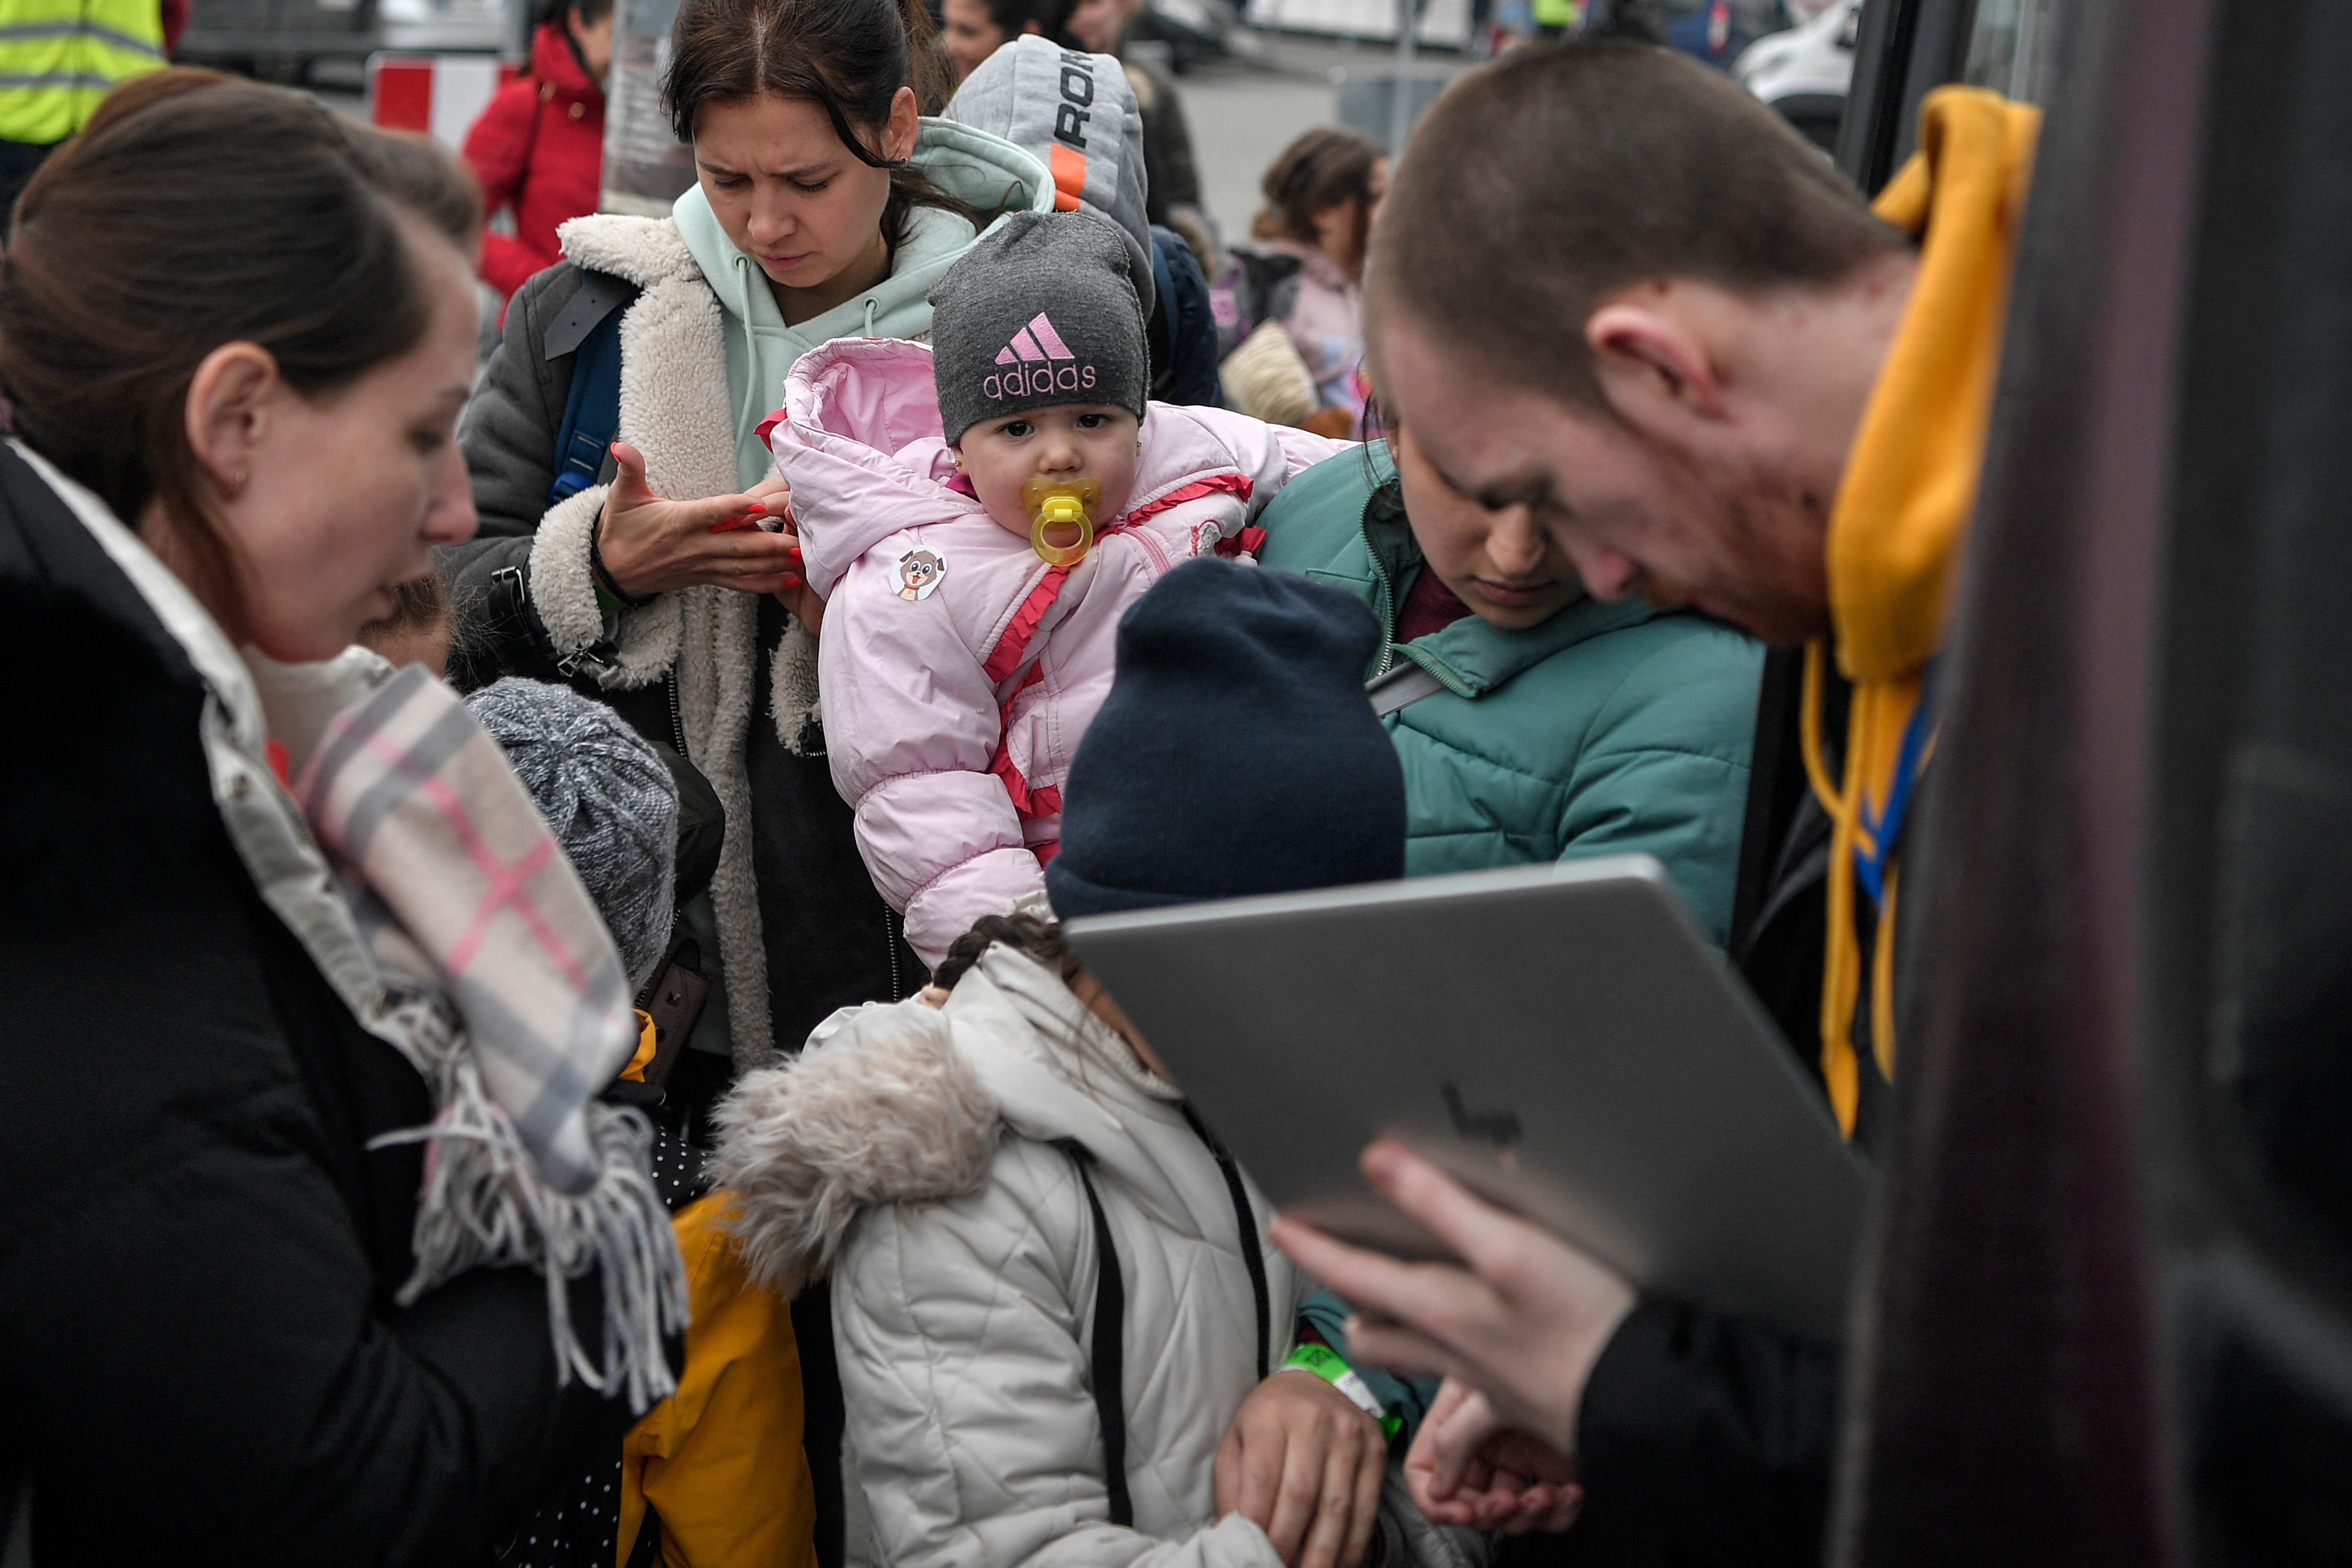 Na Polônia, mulher segura o bebê enquanto homem checa identidades antes do embarque para Portugal